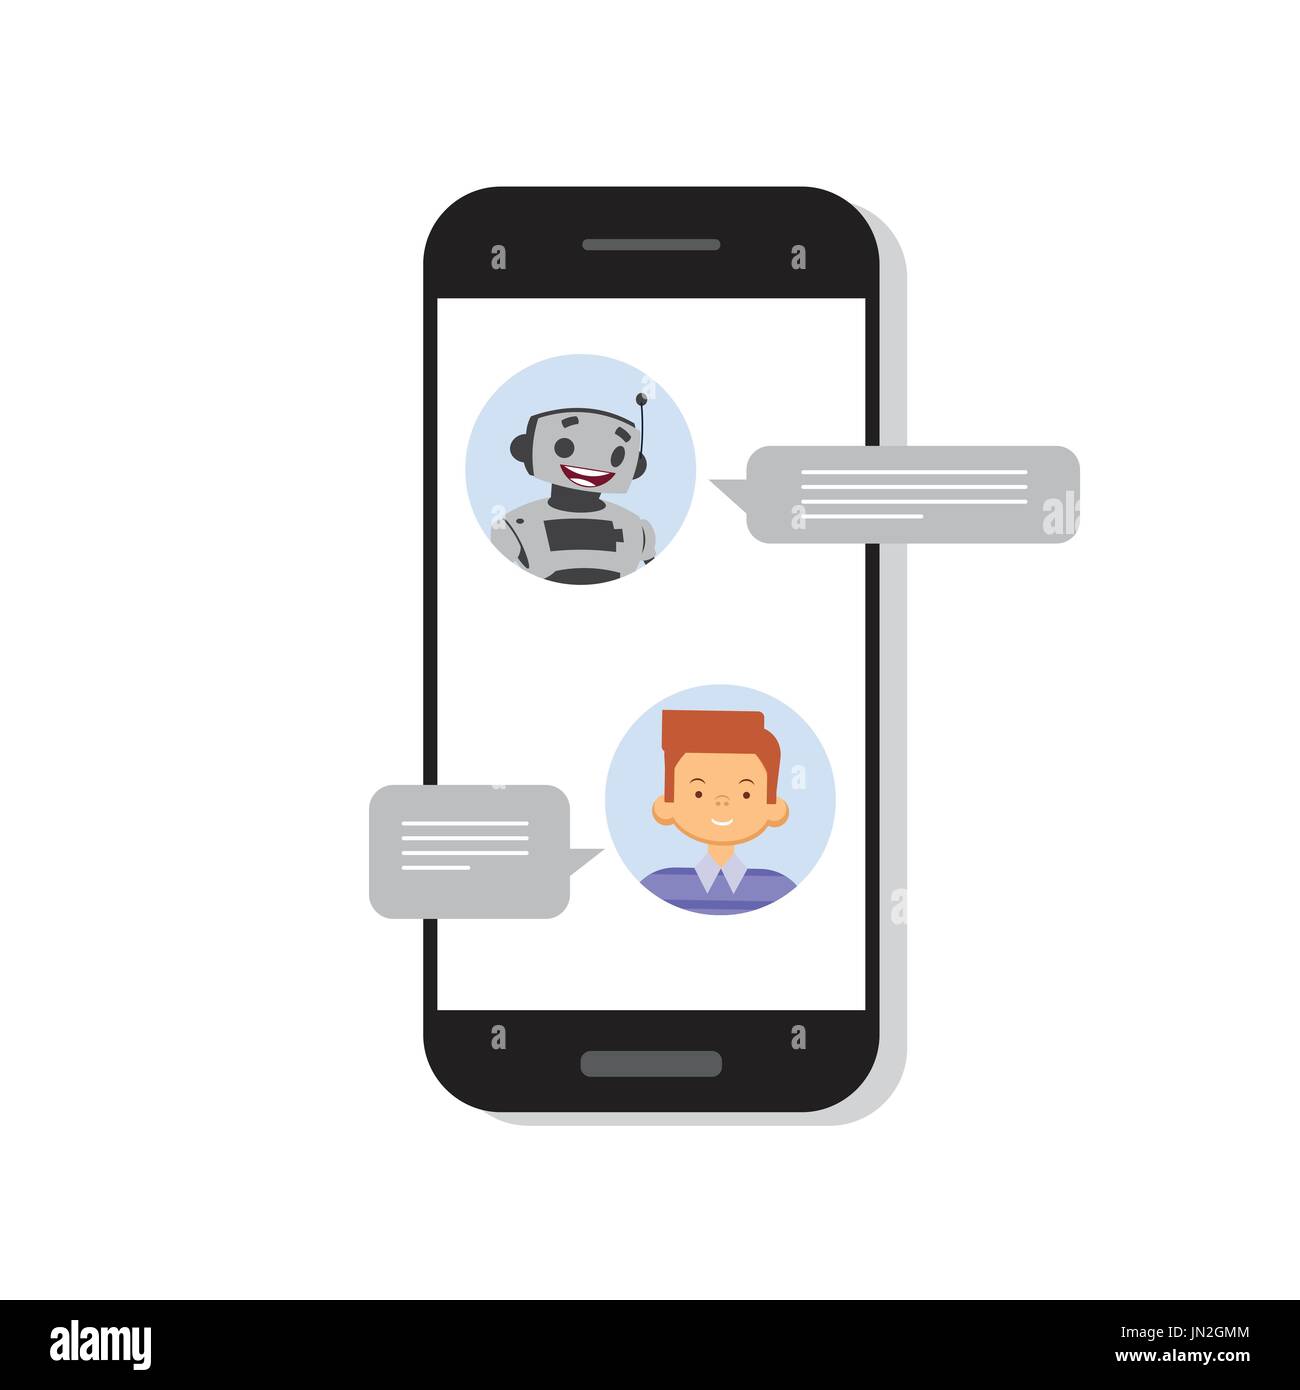 L'homme chat avec des Chat Bot sur Cell Smart Phone, Robot l'assistance virtuelle Élément de site Web ou applications mobiles Illustration de Vecteur